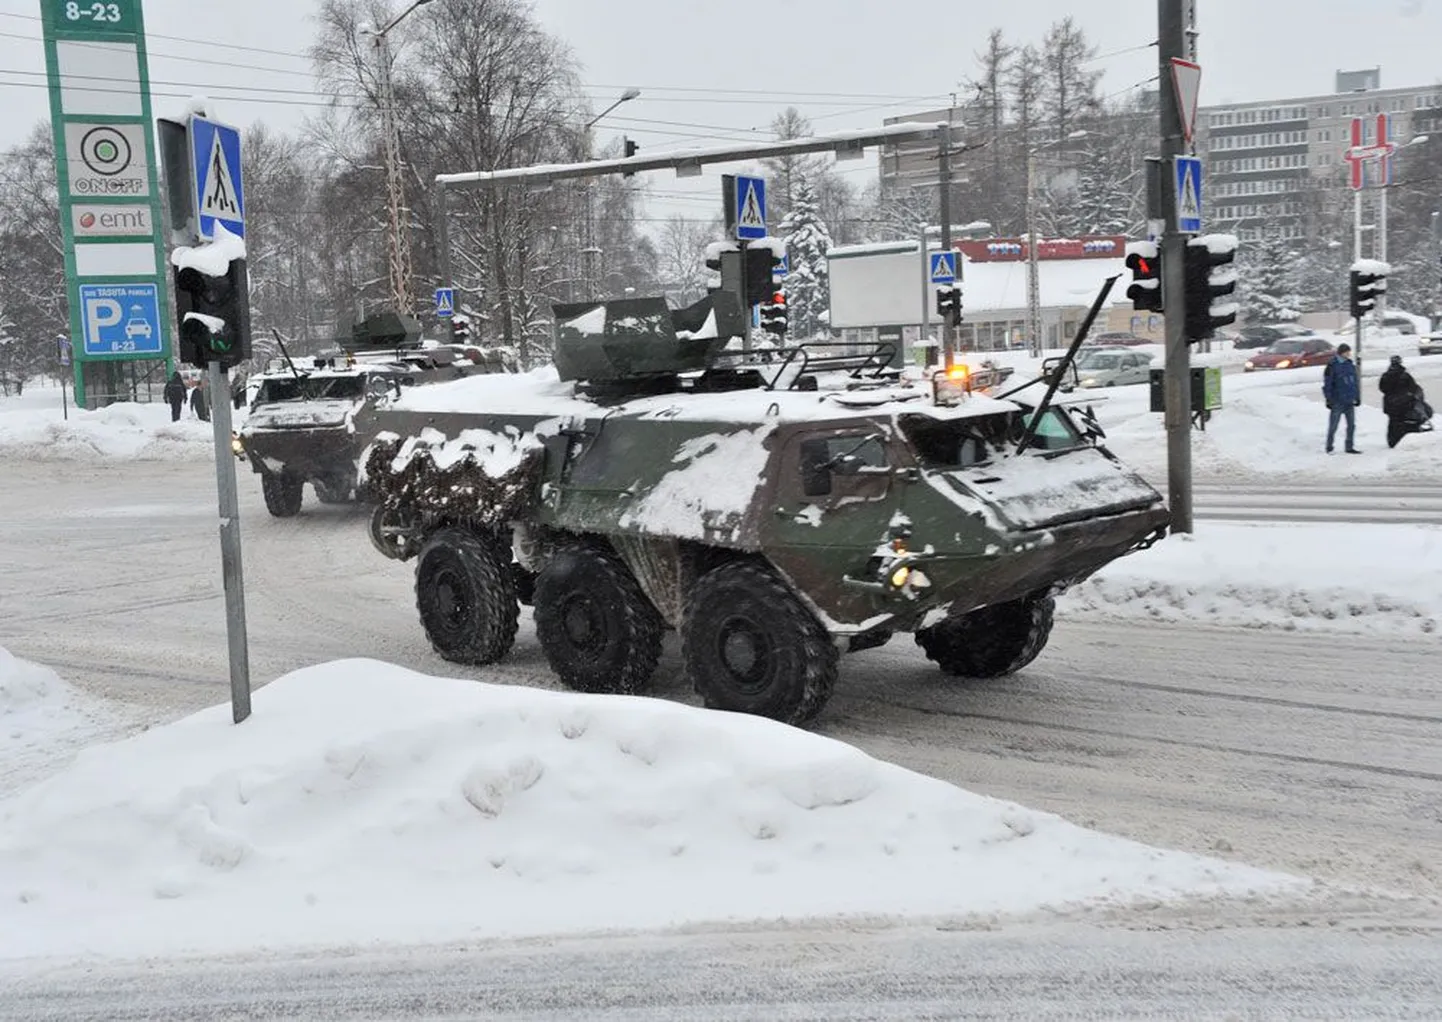 Eesti kaitsevägi kasutab Pasi soomukeid, mille ametlik nimi on Sisu XA-180EST. Hollandlastel on samade soomukite natuke uuem versioon.